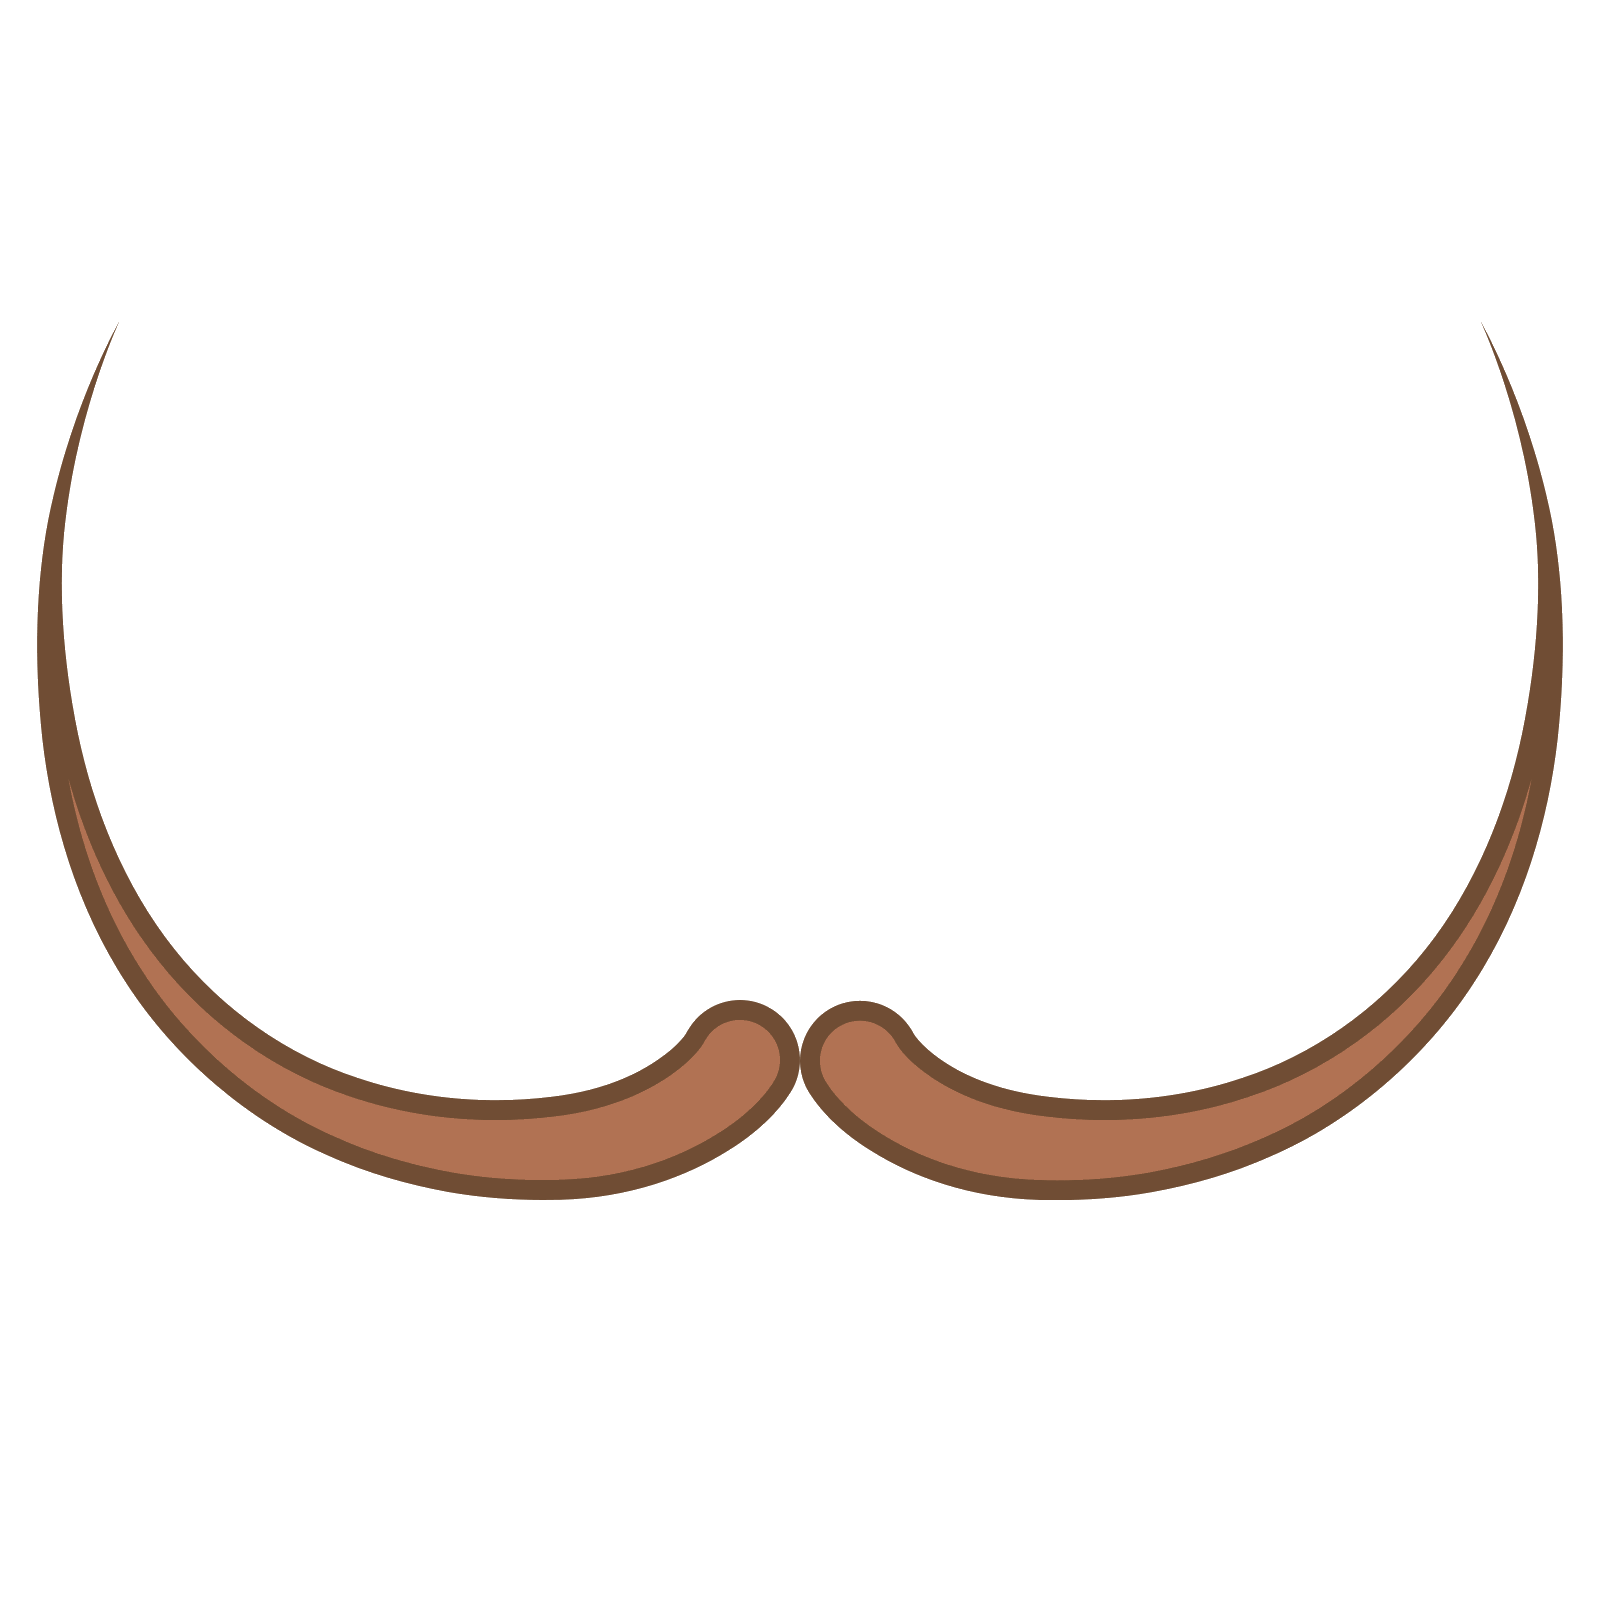 Moustache